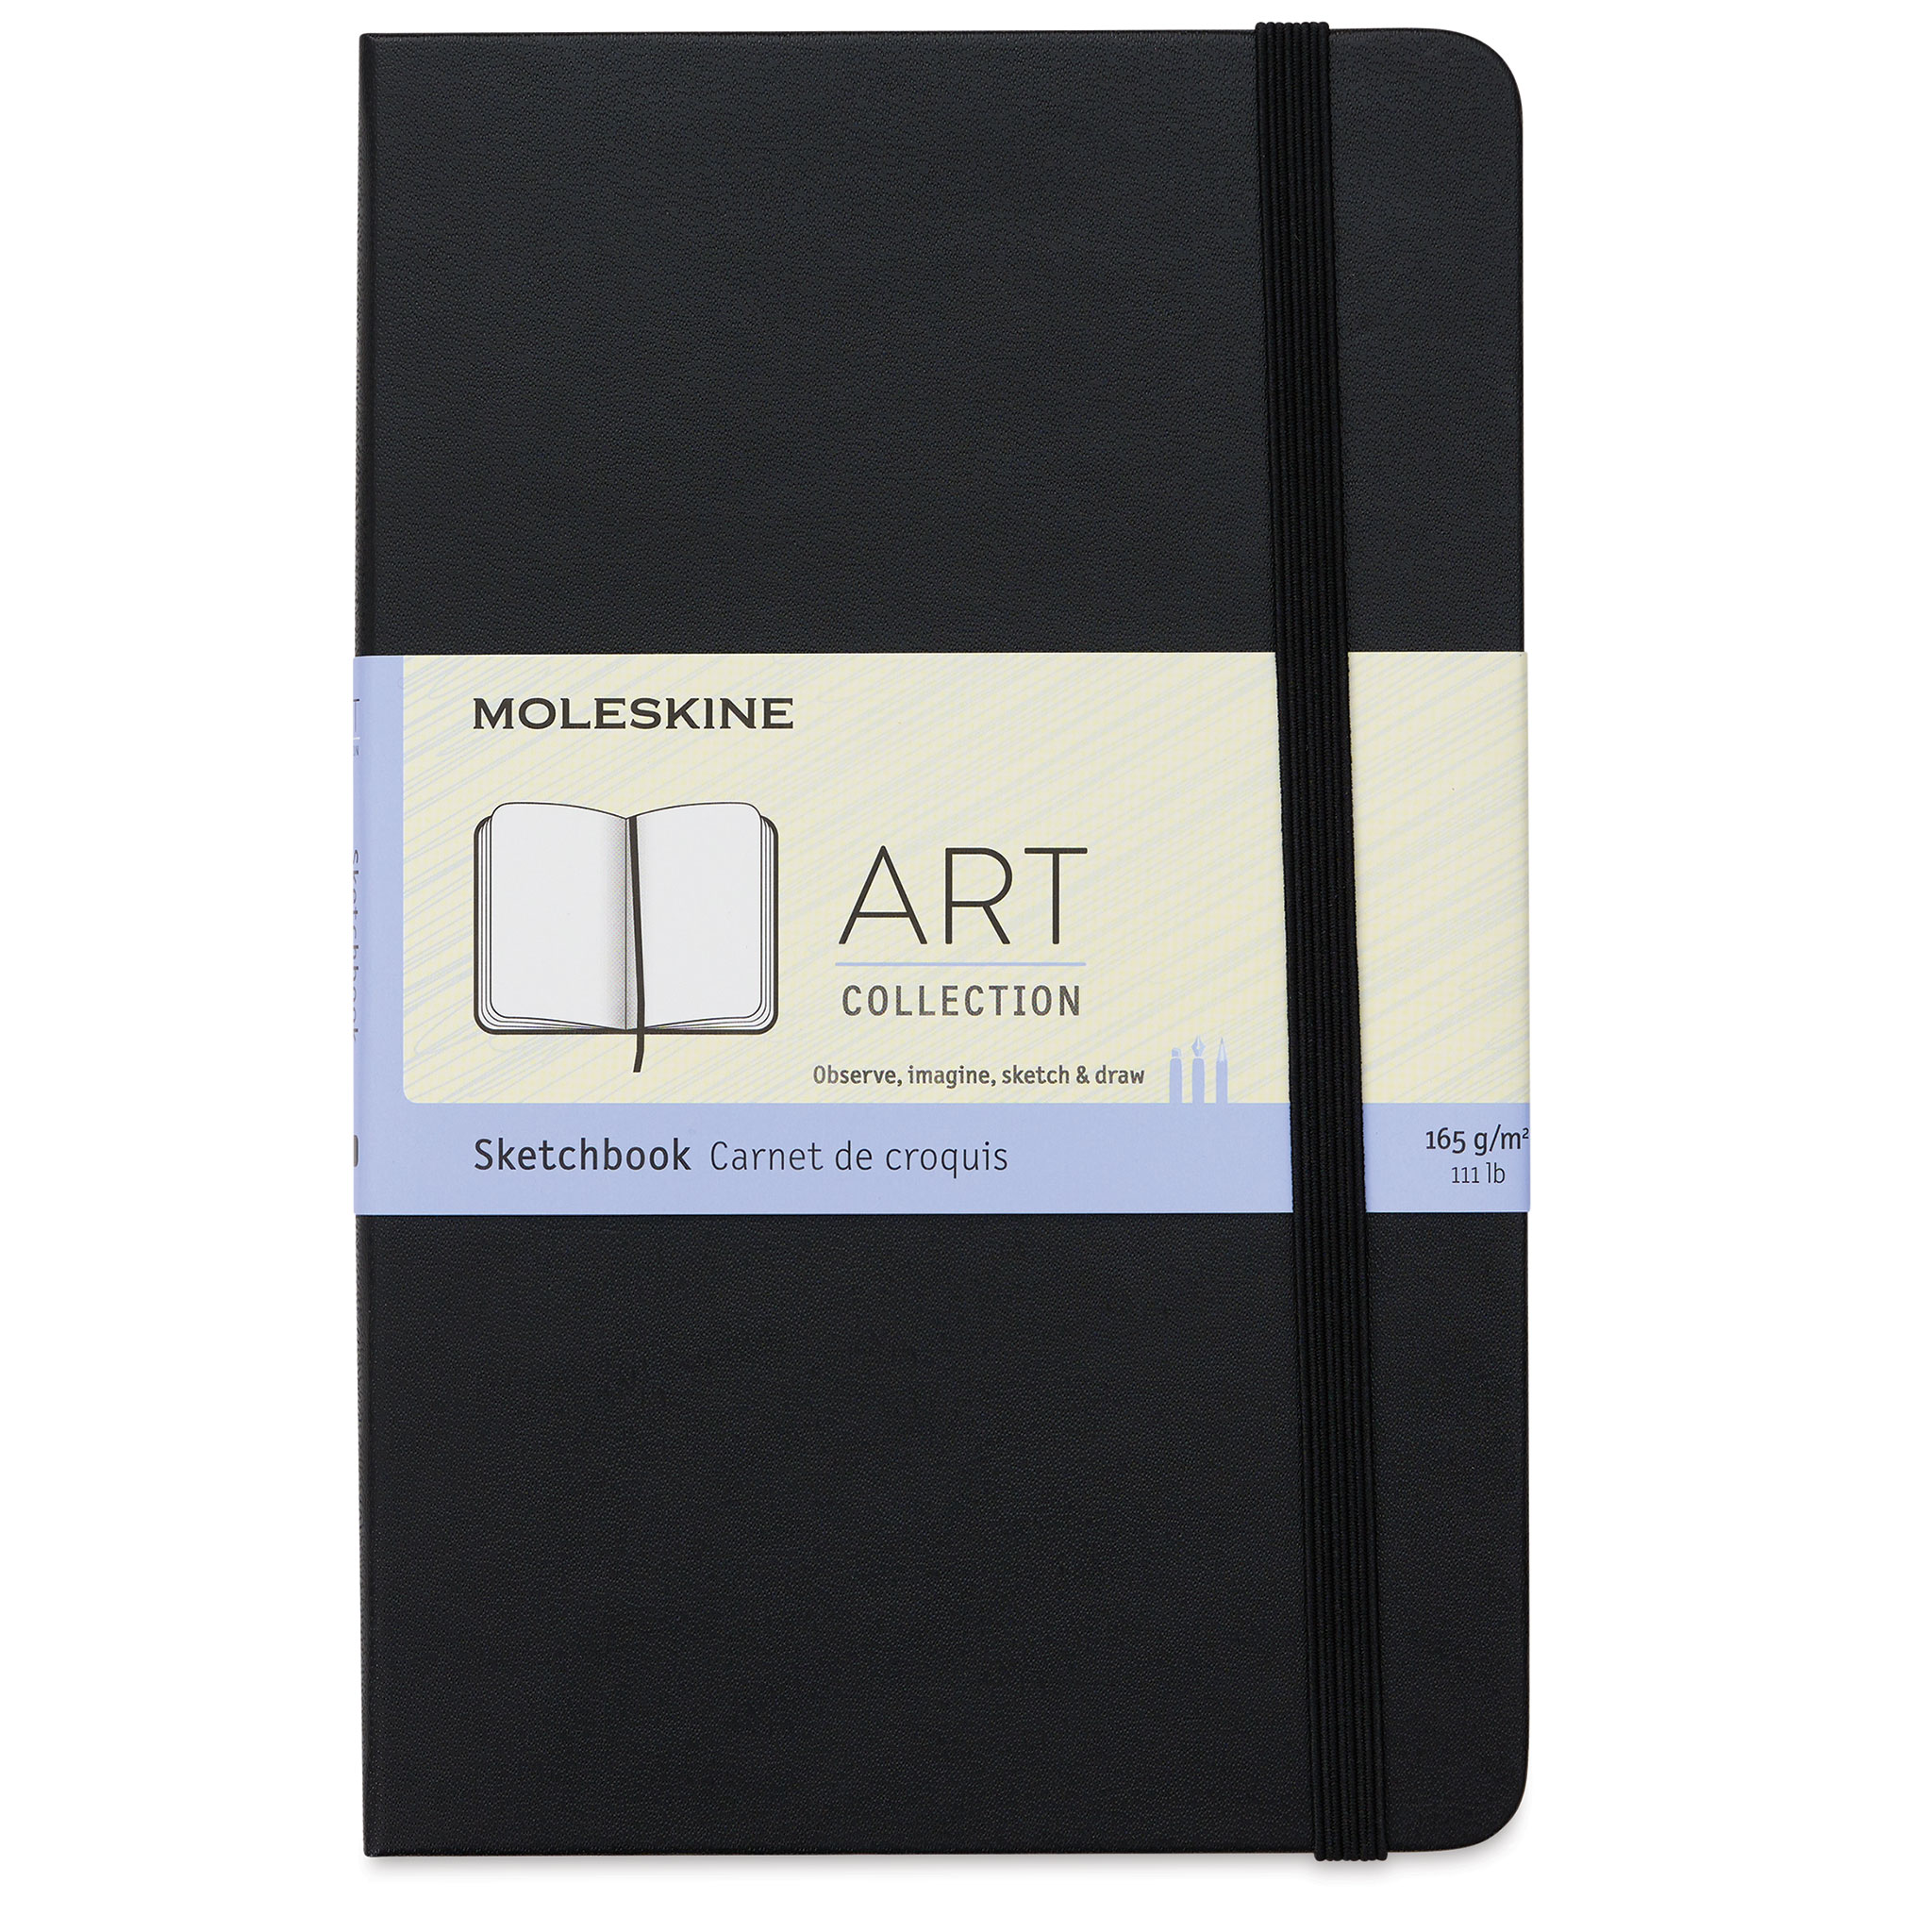 Moleskine Art Collection Sketchbooks